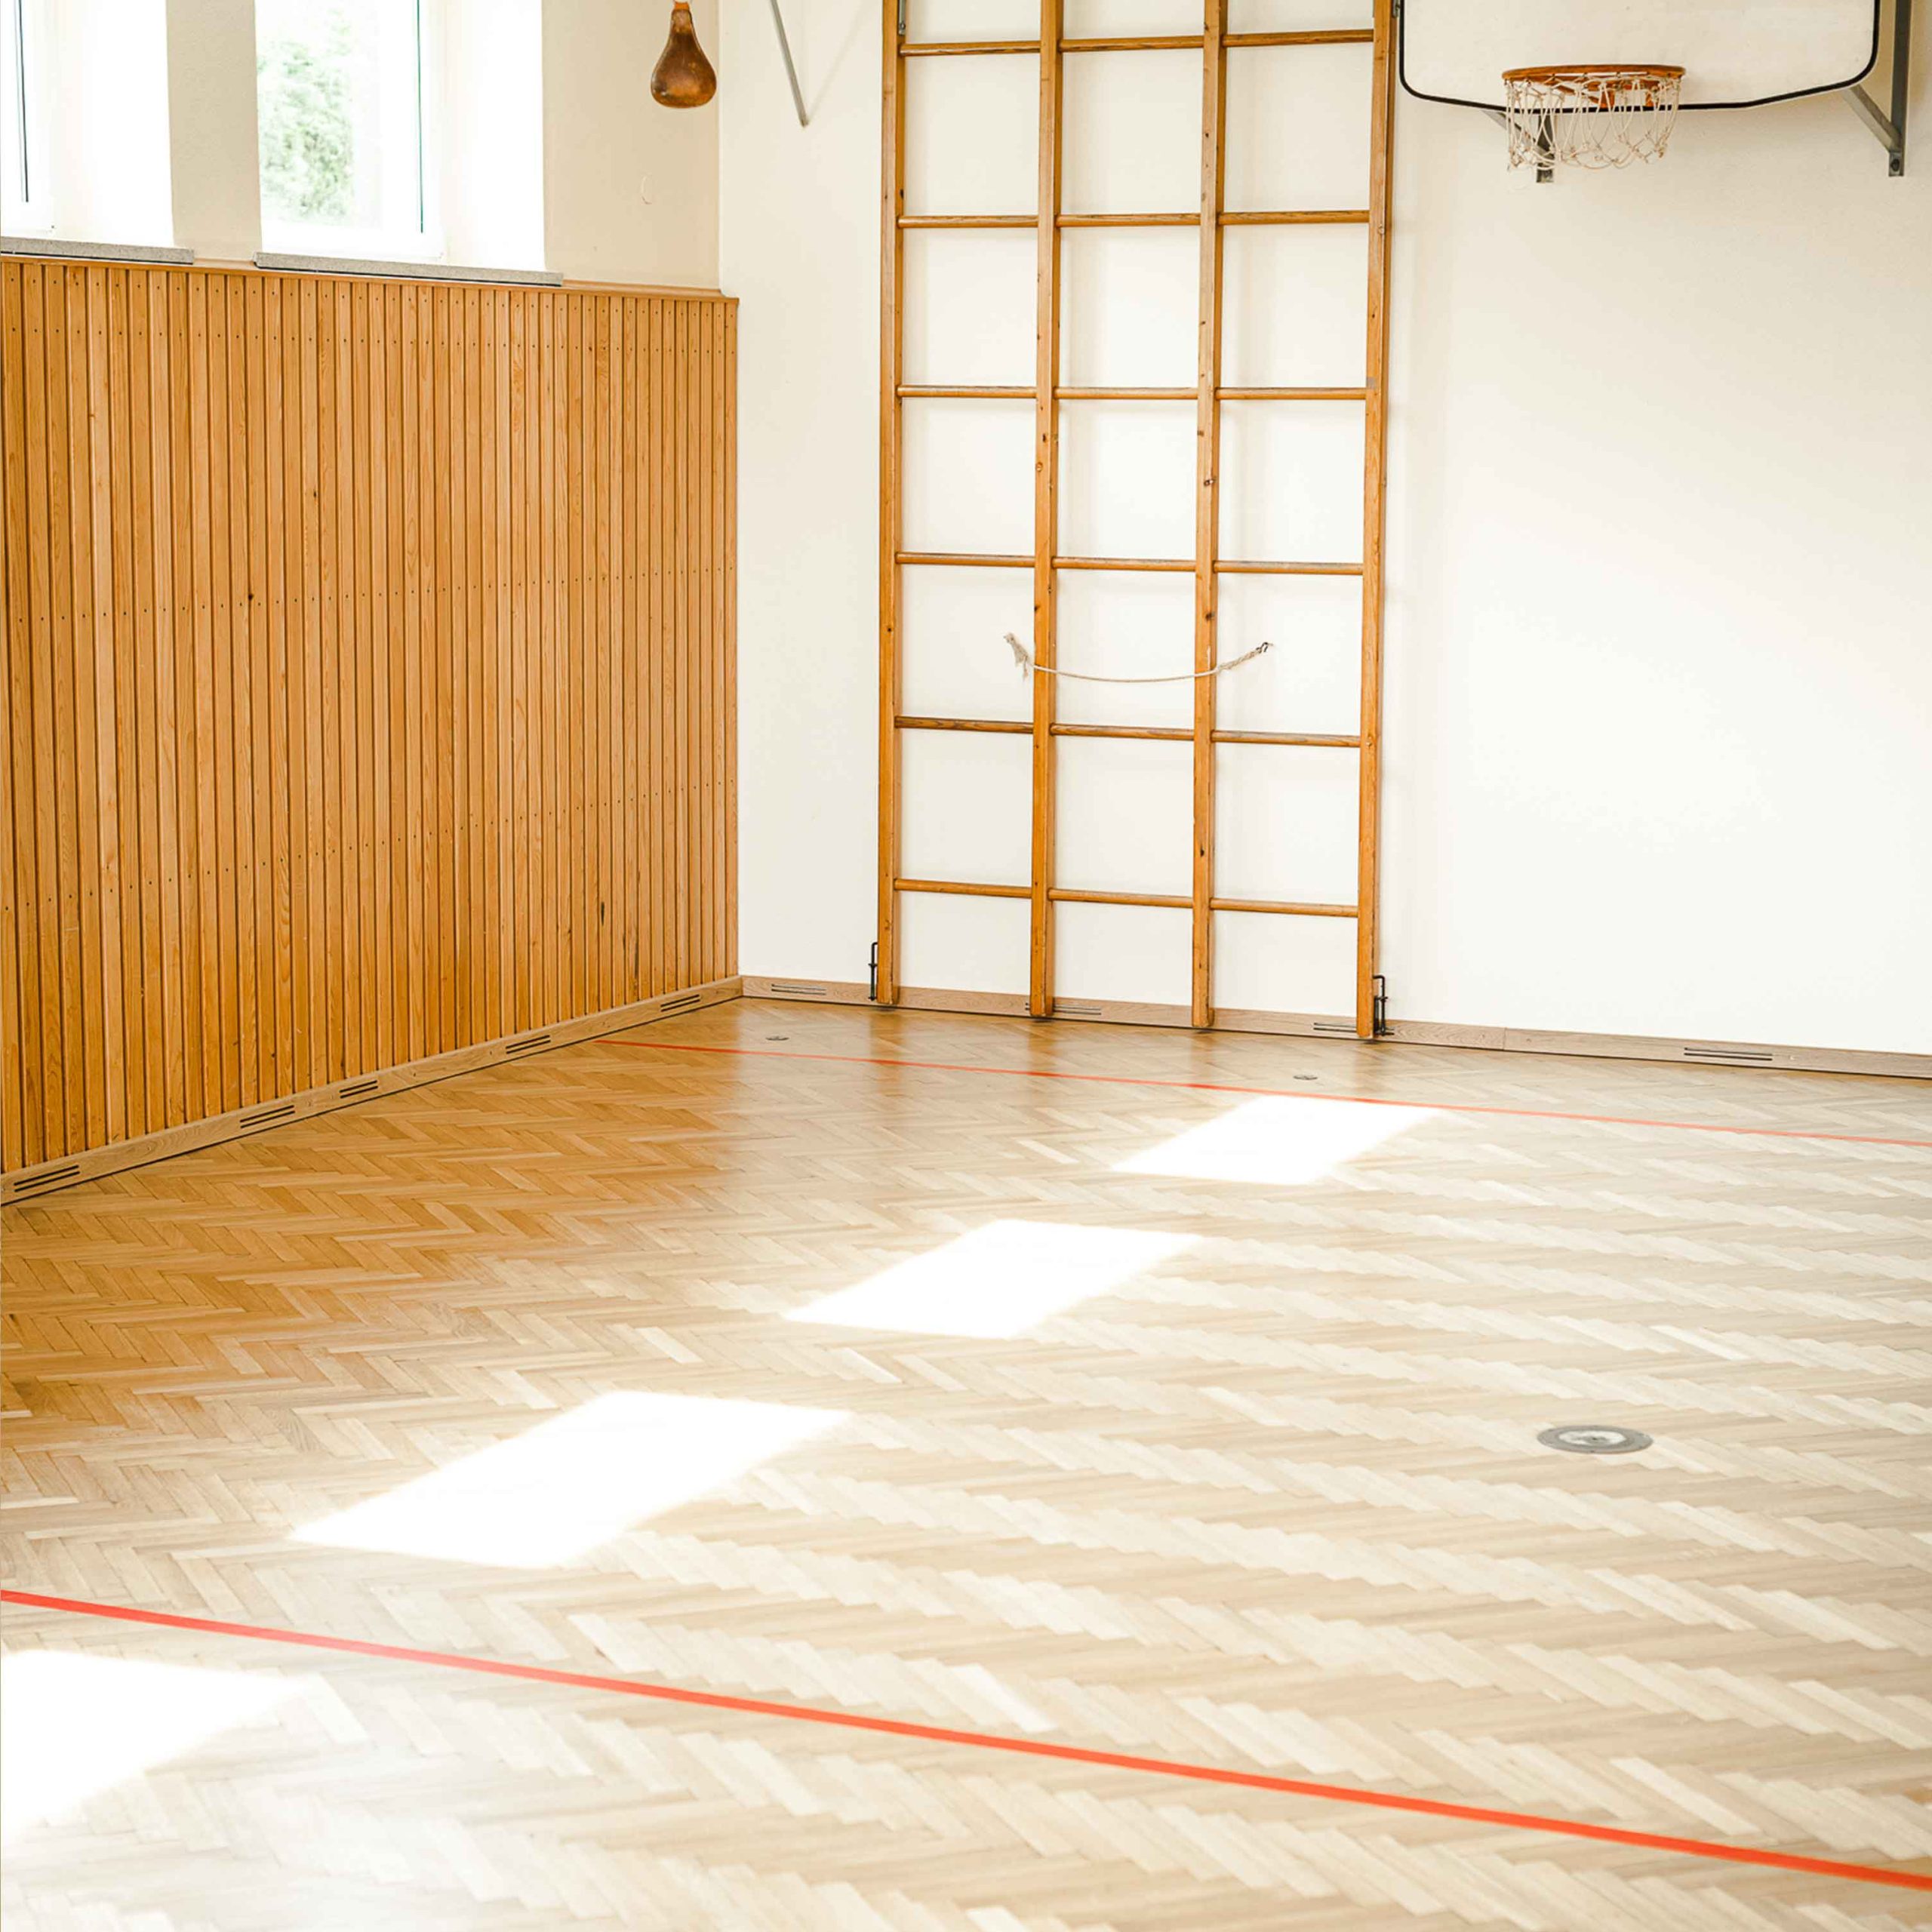 Bild zeigt Sporthalle mit neu verlegtem Holzboden und Bodenmarkierung.